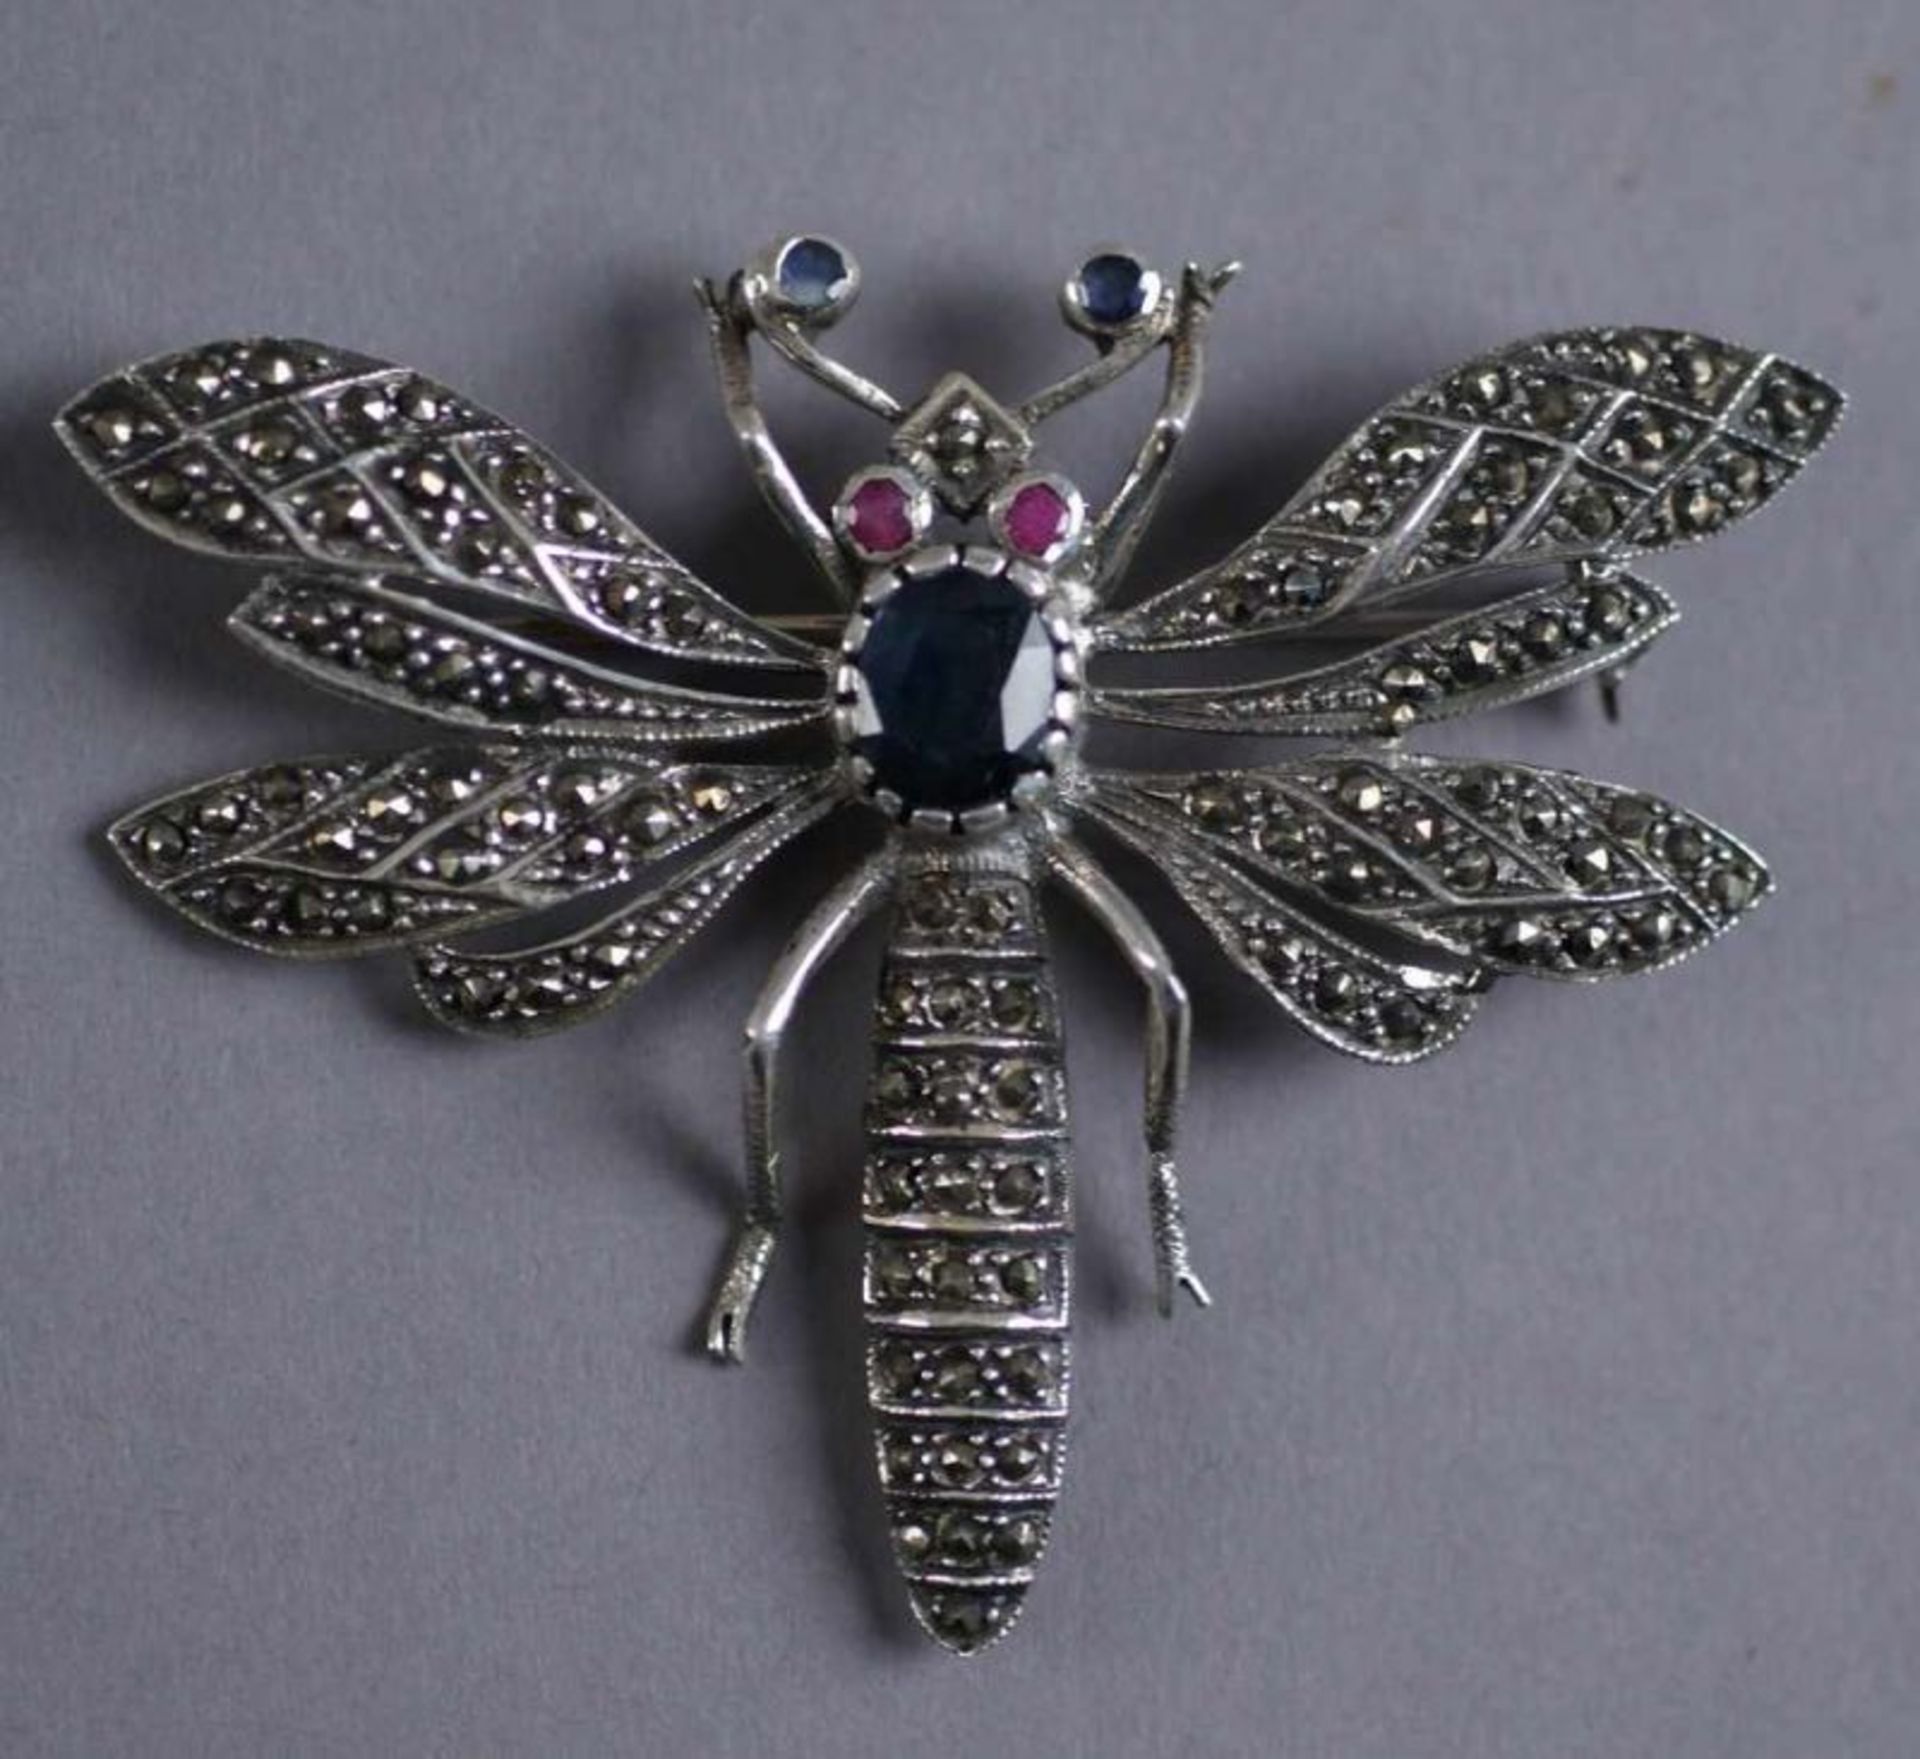 Brosche aus Silber mit gefassten Steinen in Form einer zarten Libelle, 5,7x7,2 cm 20.17 % buyer's